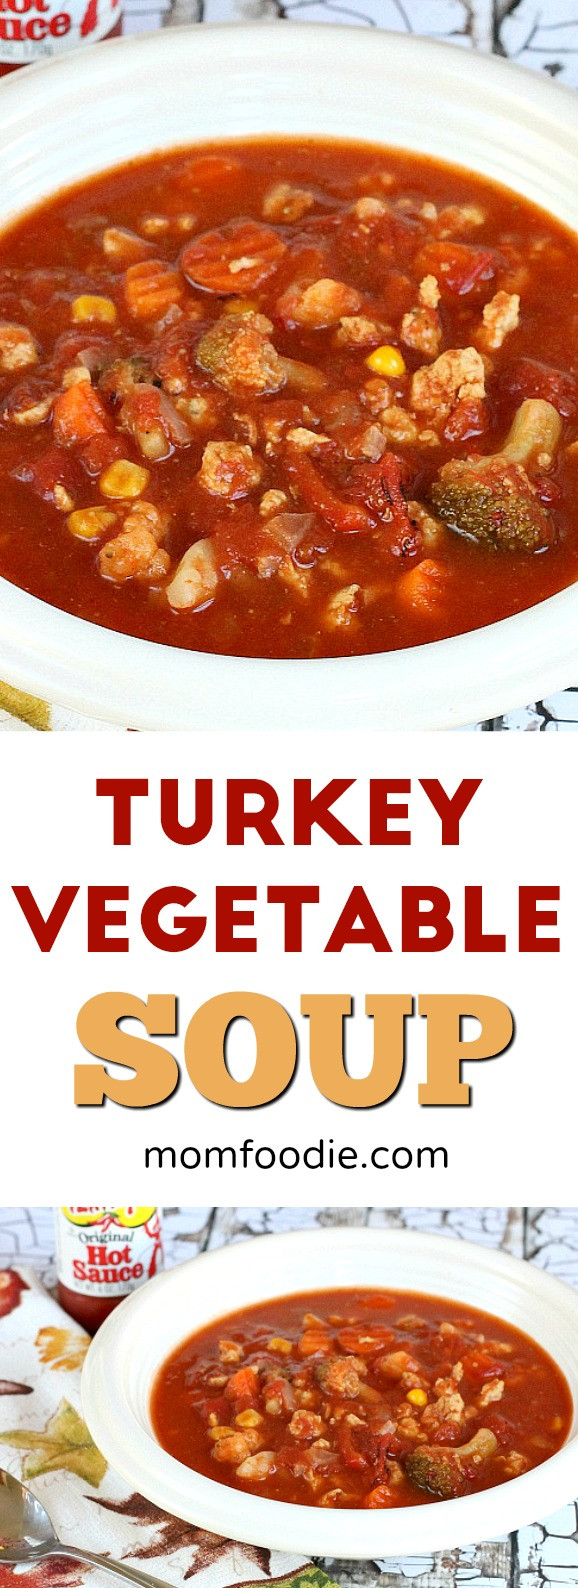 Low Calorie Soup Recipes
 Turkey Ve able Soup Recipe an easy low calorie soup